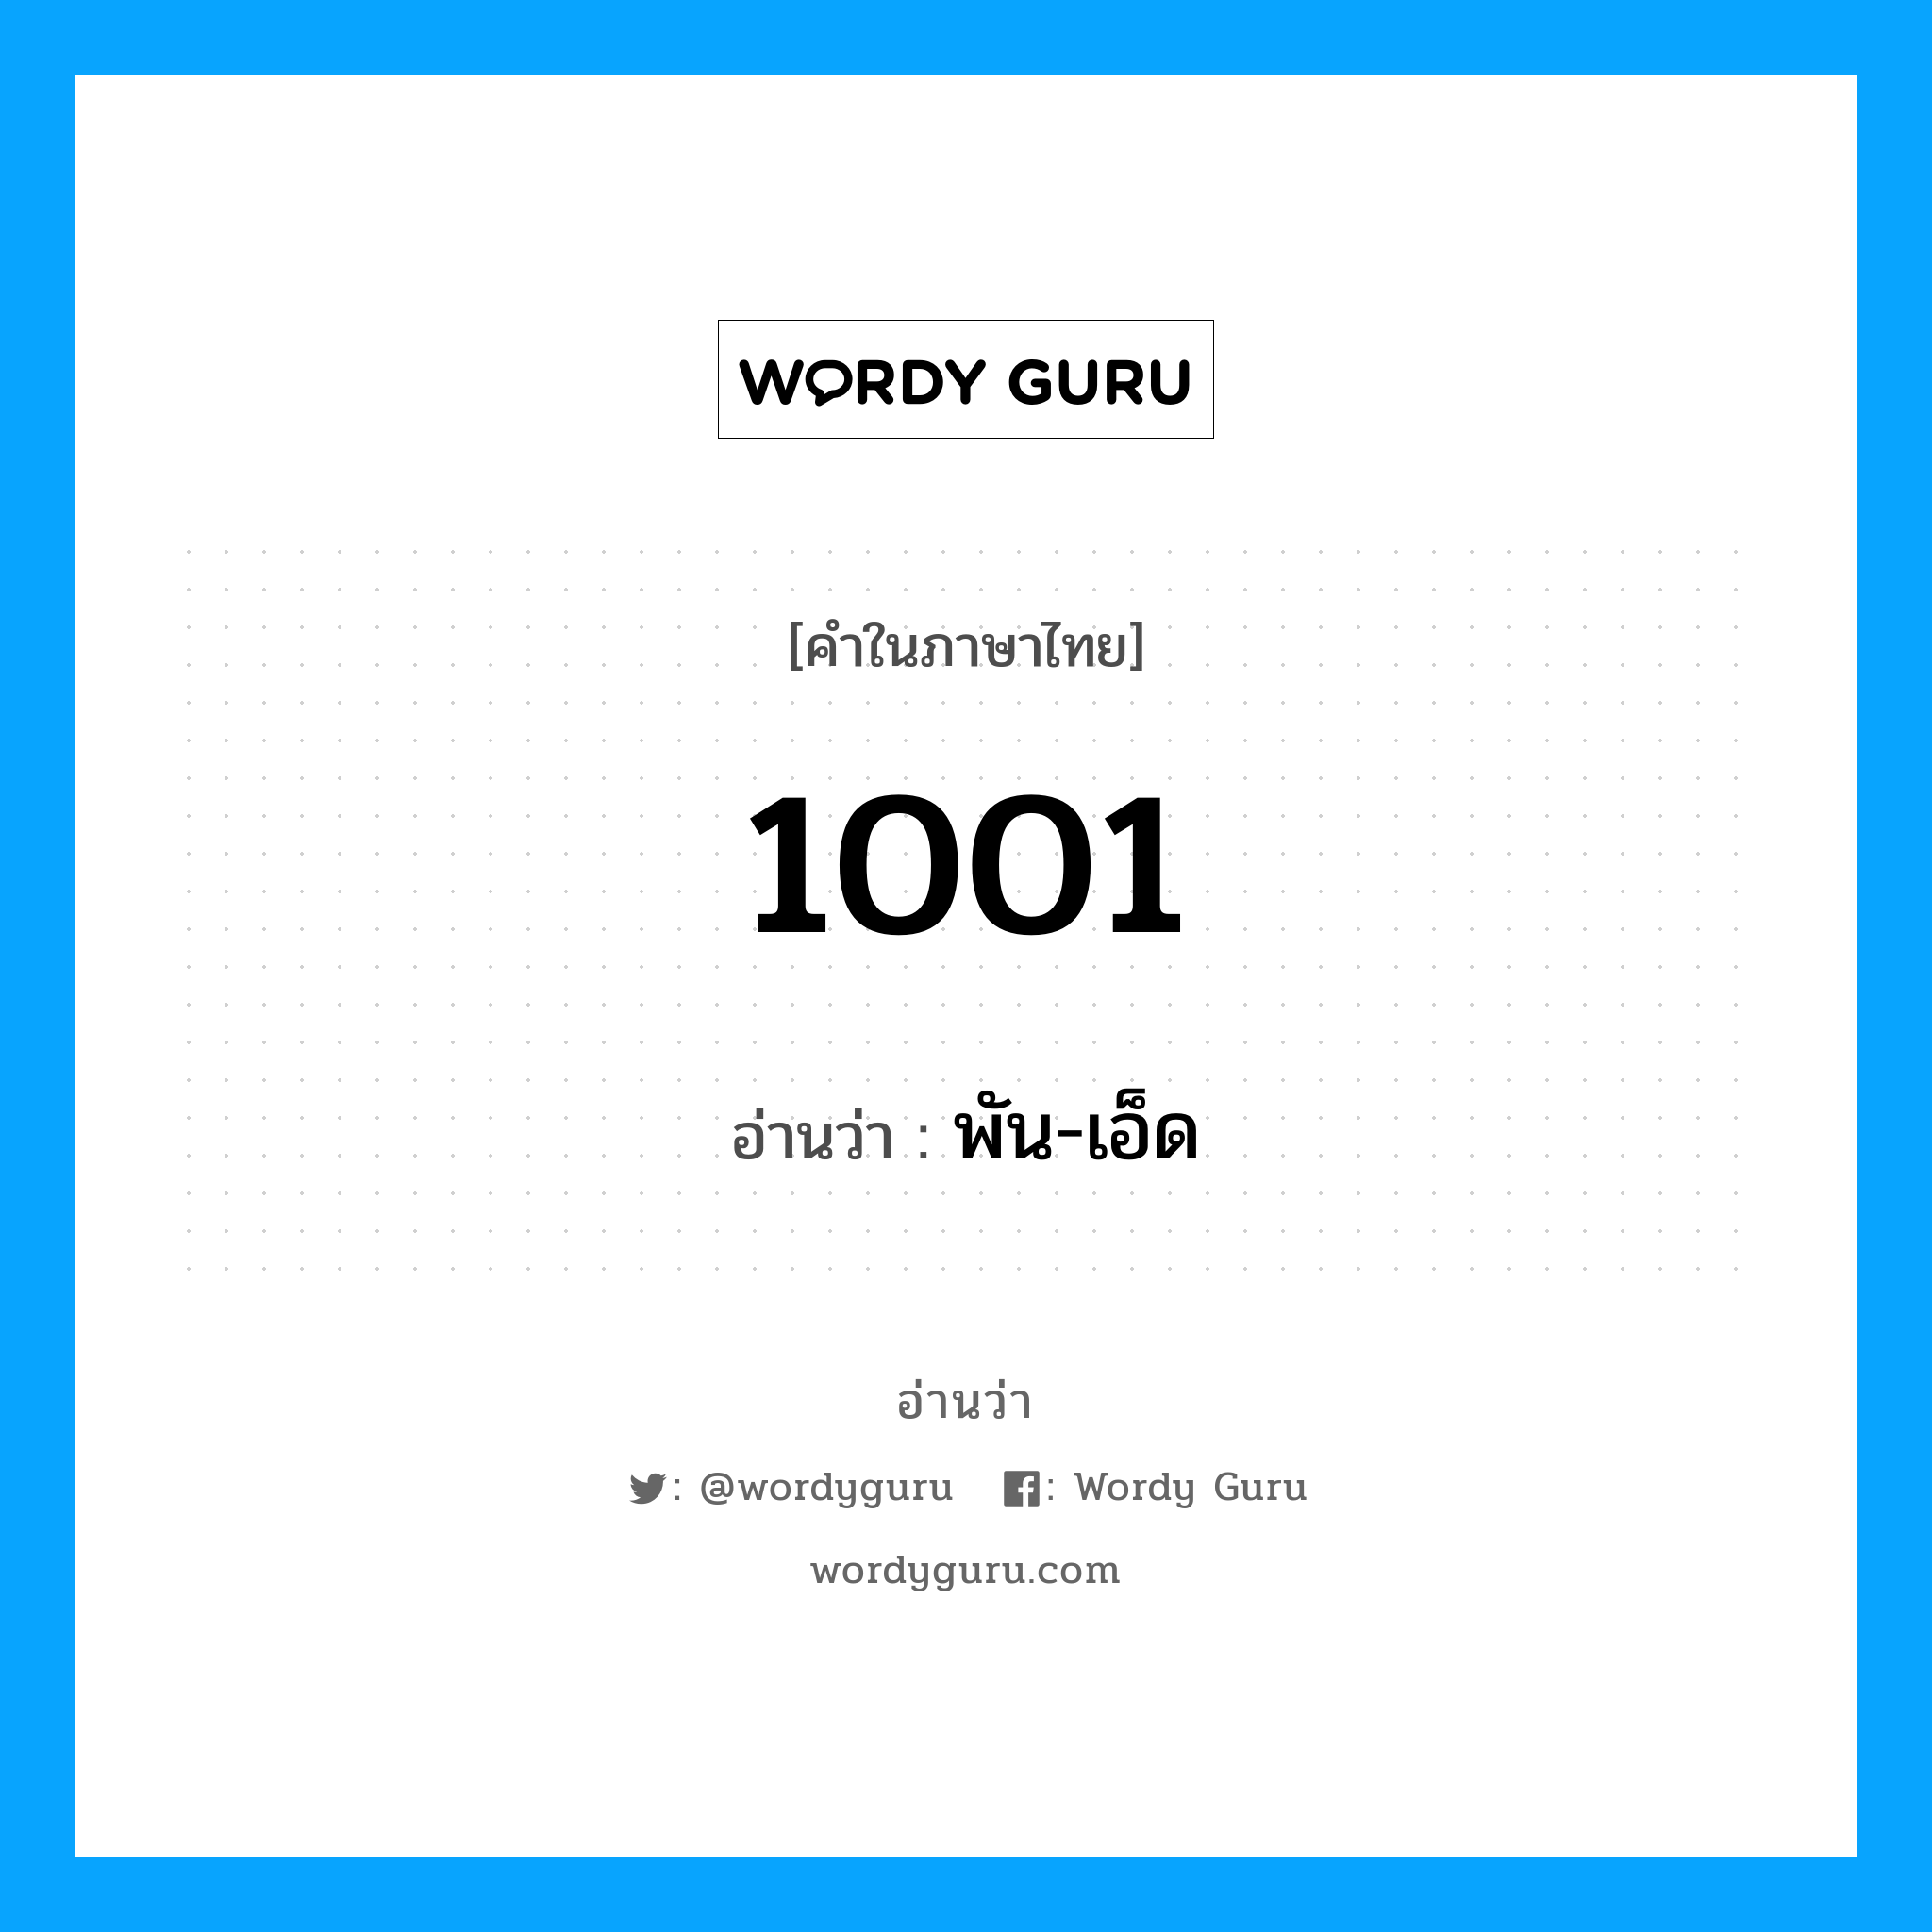 1001 อ่านว่า?, คำในภาษาไทย 1001 อ่านว่า พัน-เอ็ด